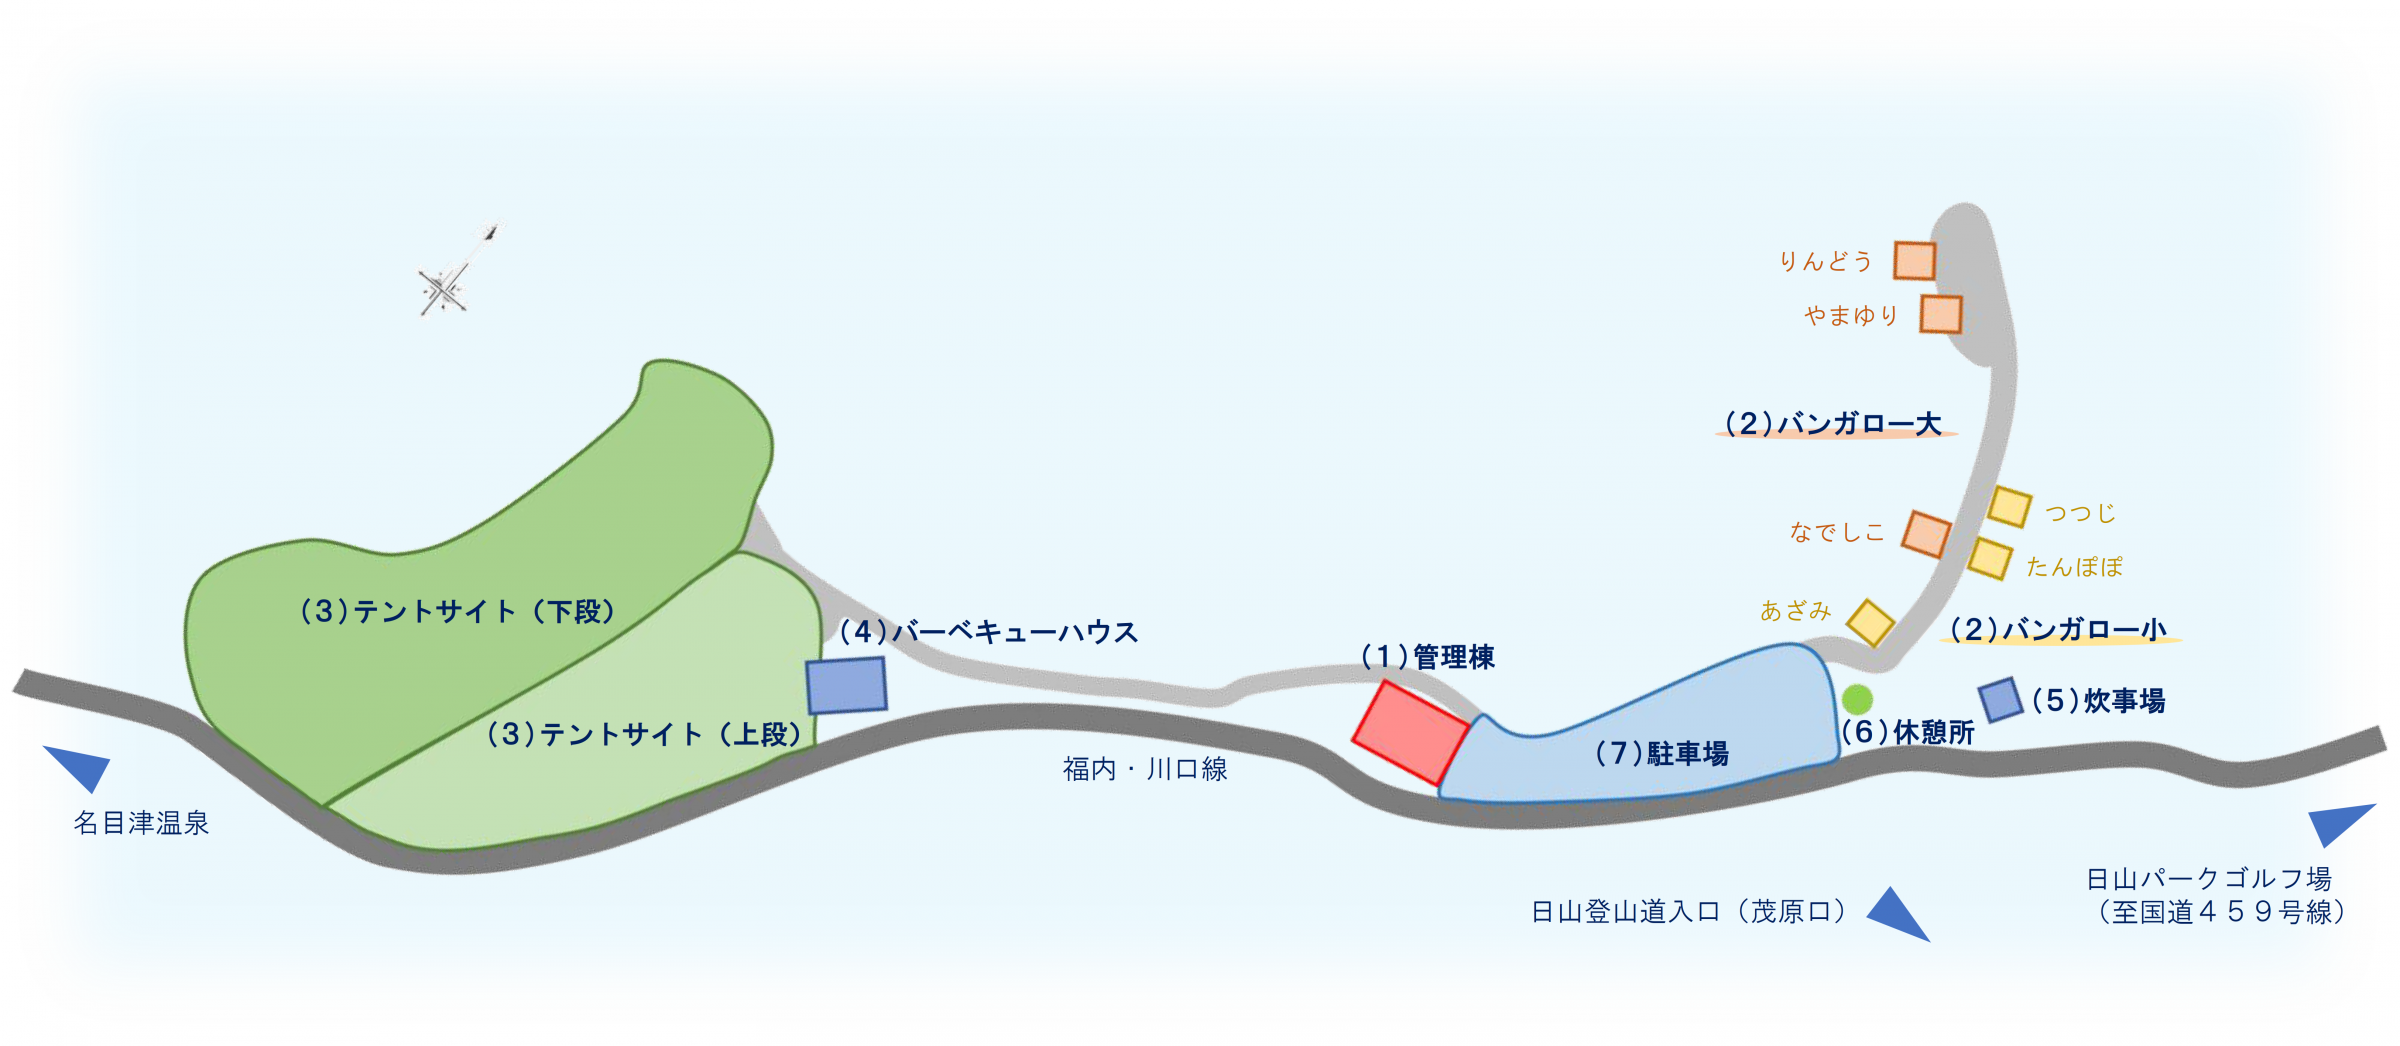 日山キャンプ場案内図